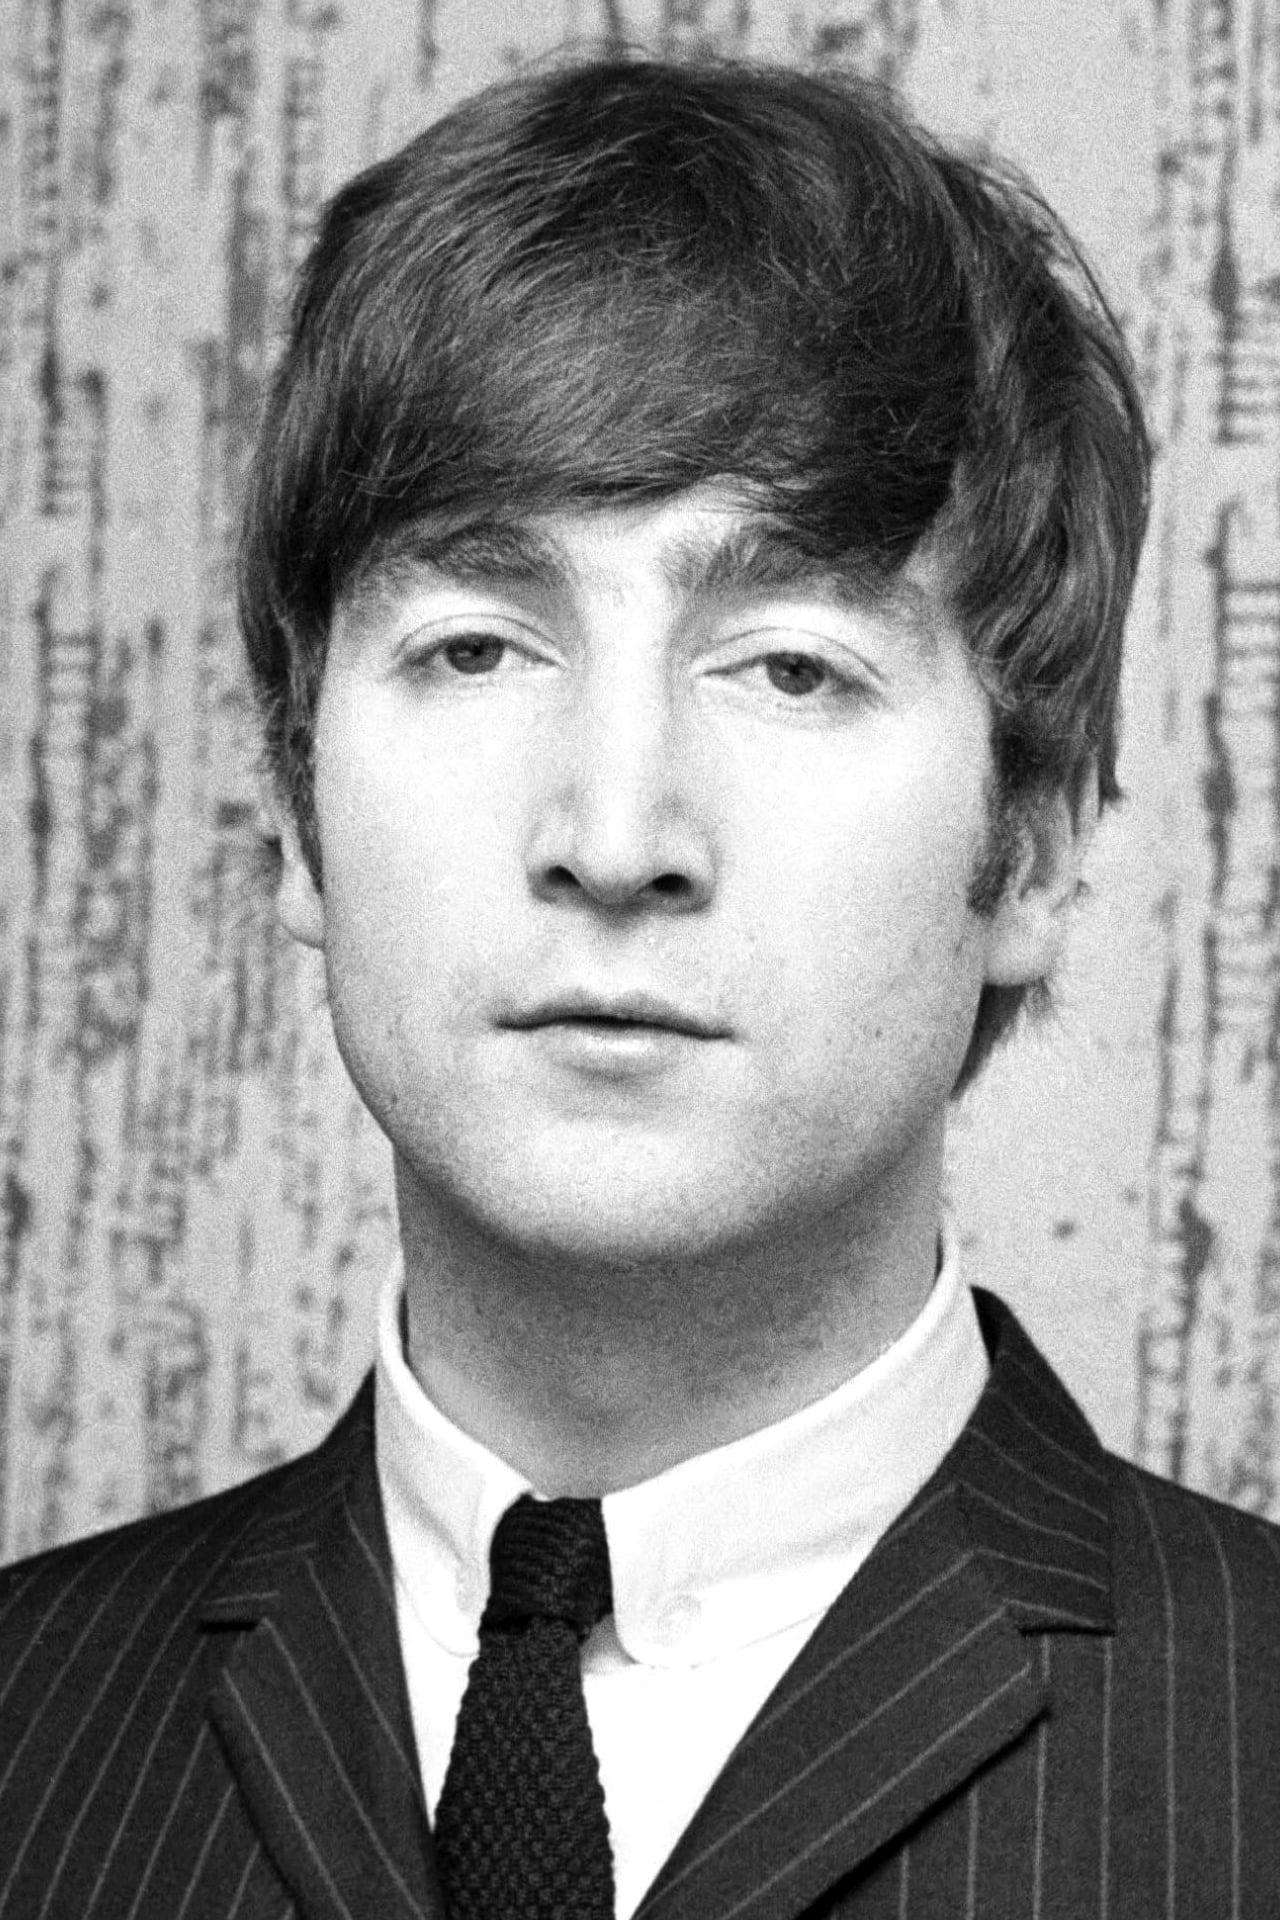 John Lennon | Himself